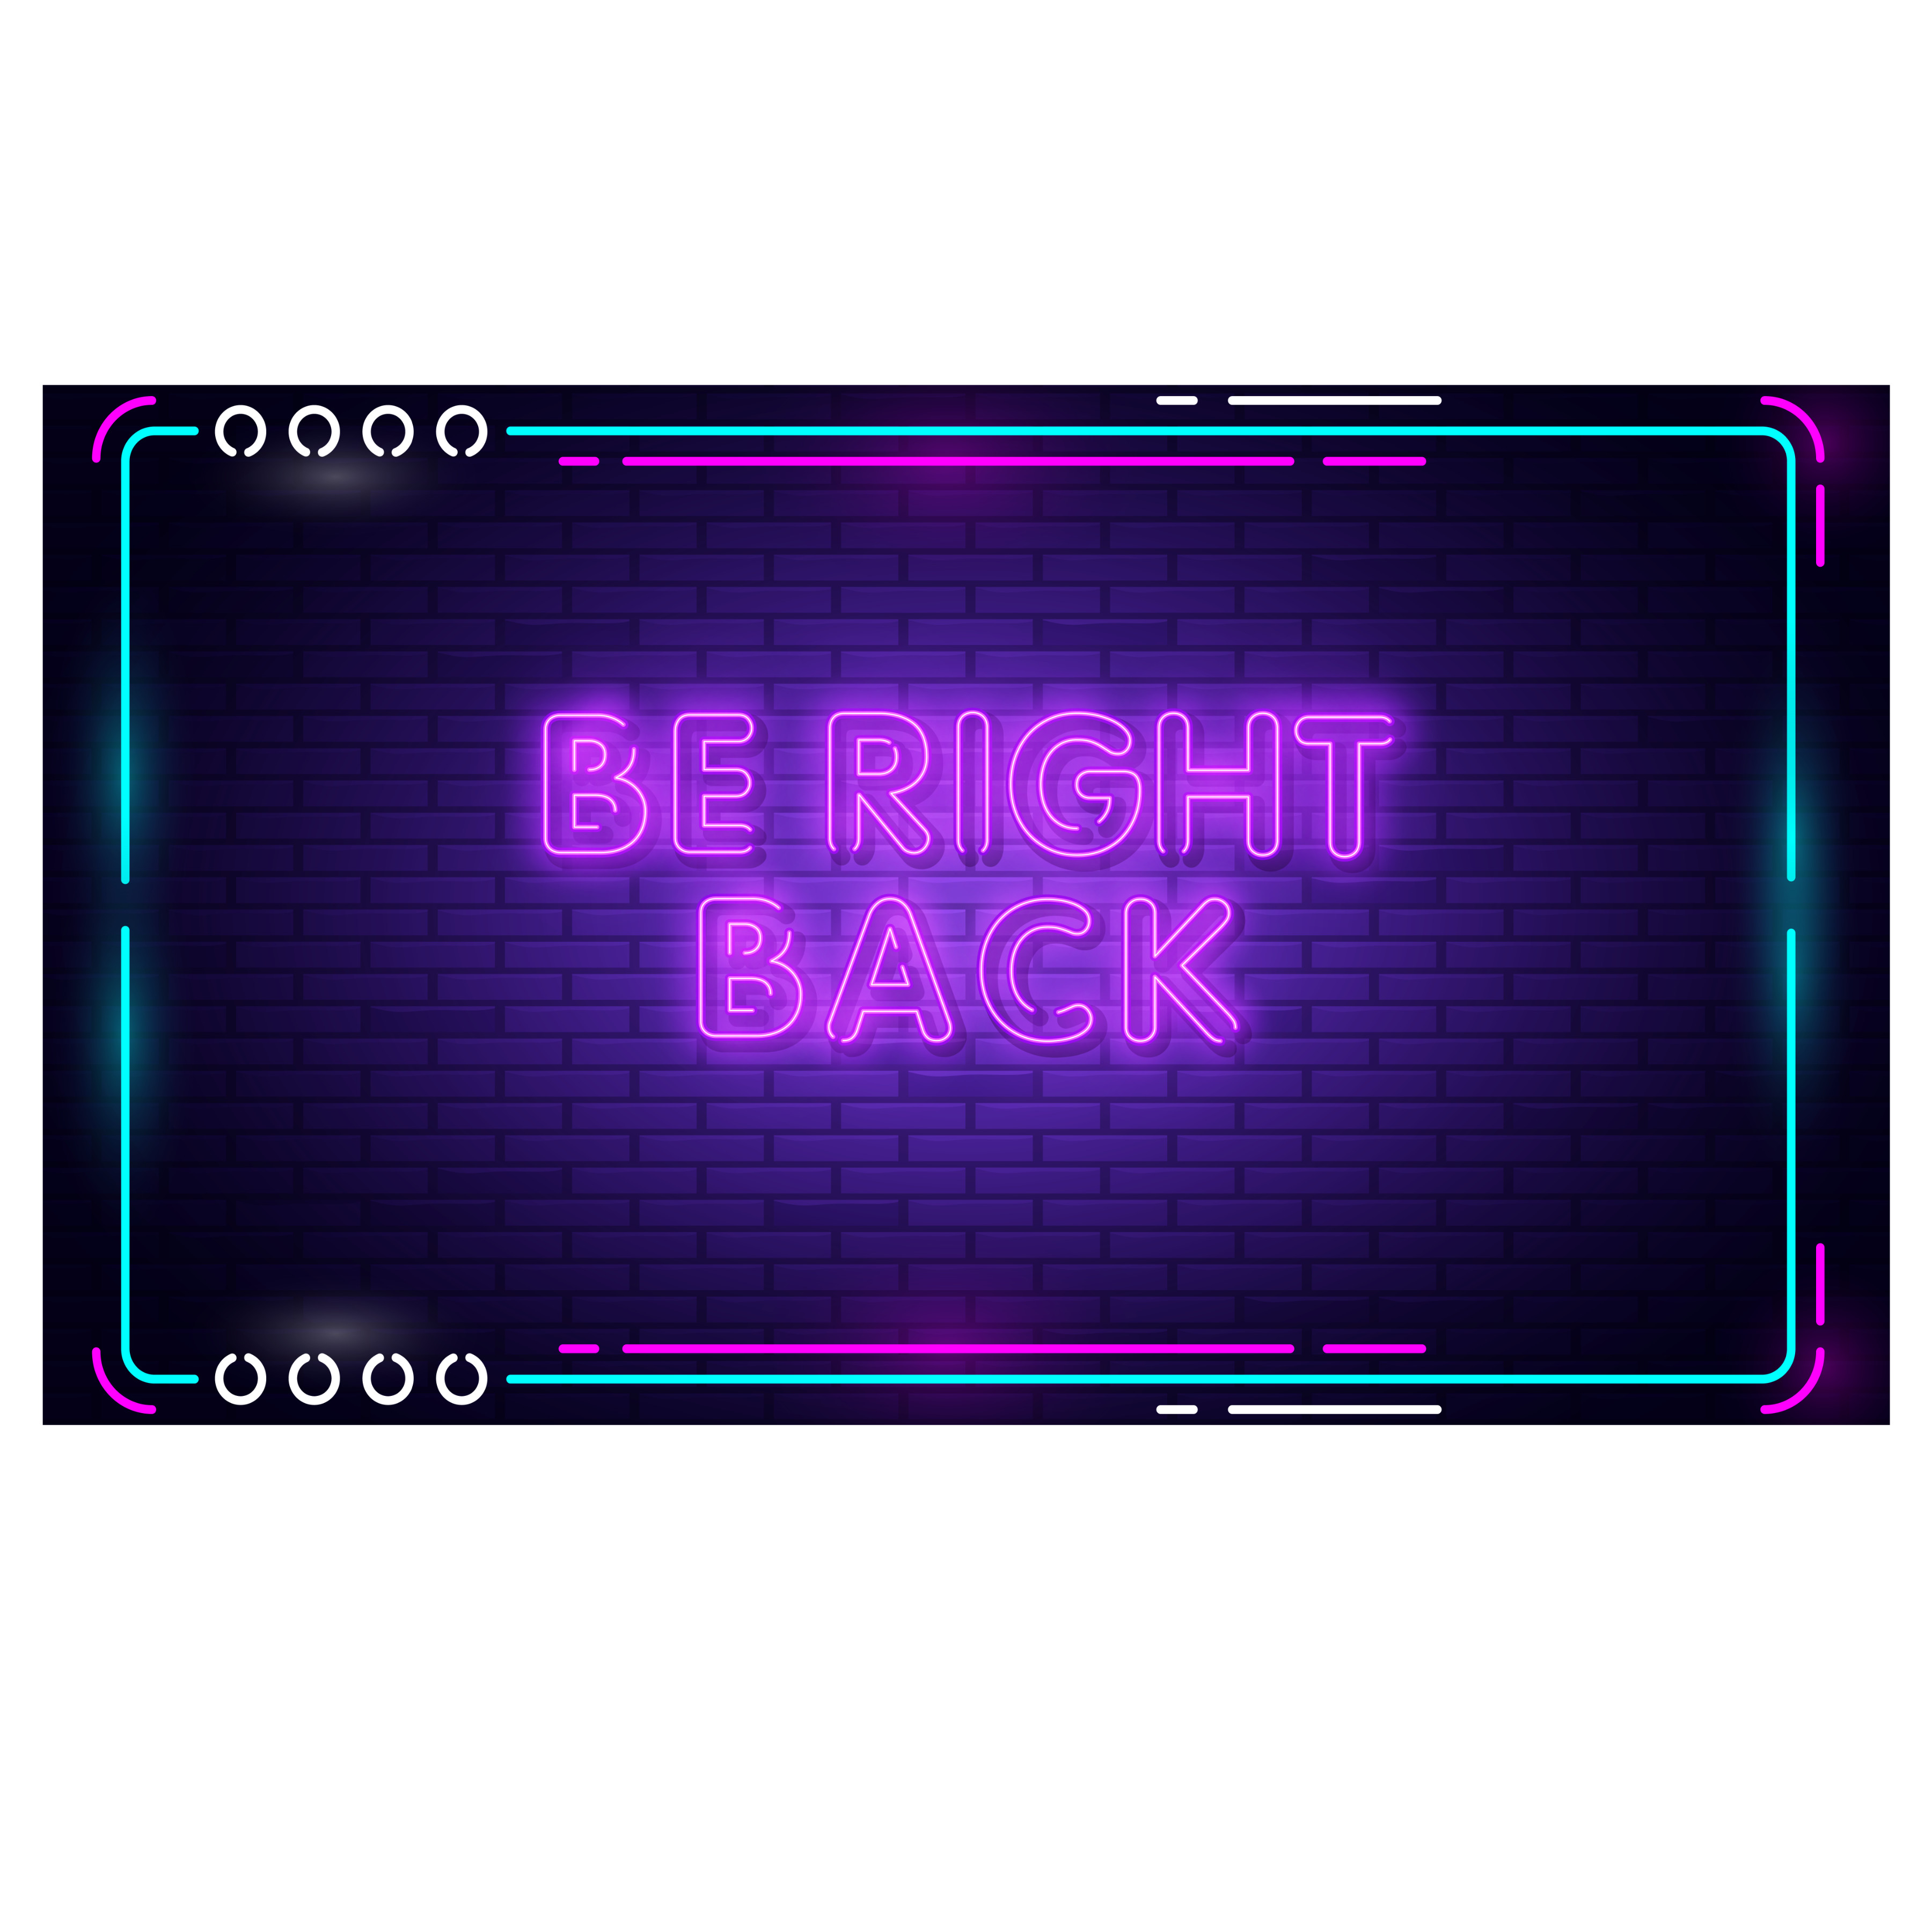 Be Right Back Scene B.  Done in Affinity Designer. 